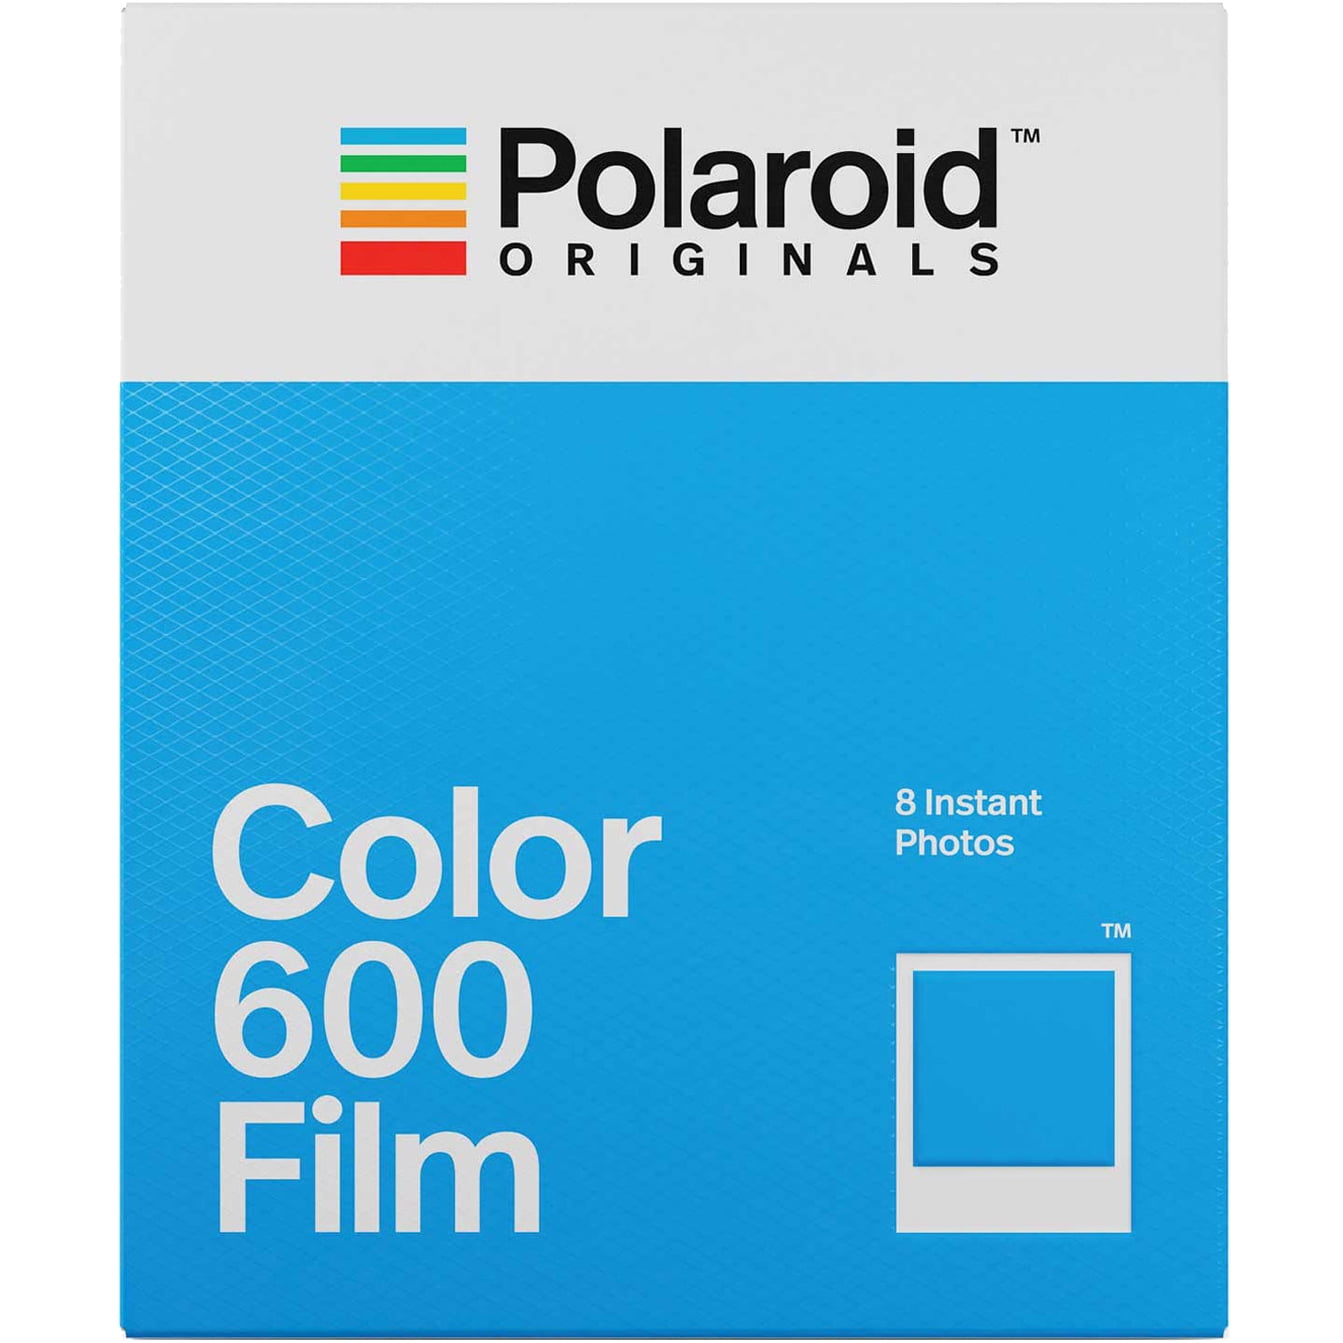 Opwekking maak je geïrriteerd langzaam Polaroid Originals Color Film for 600 - Walmart.com